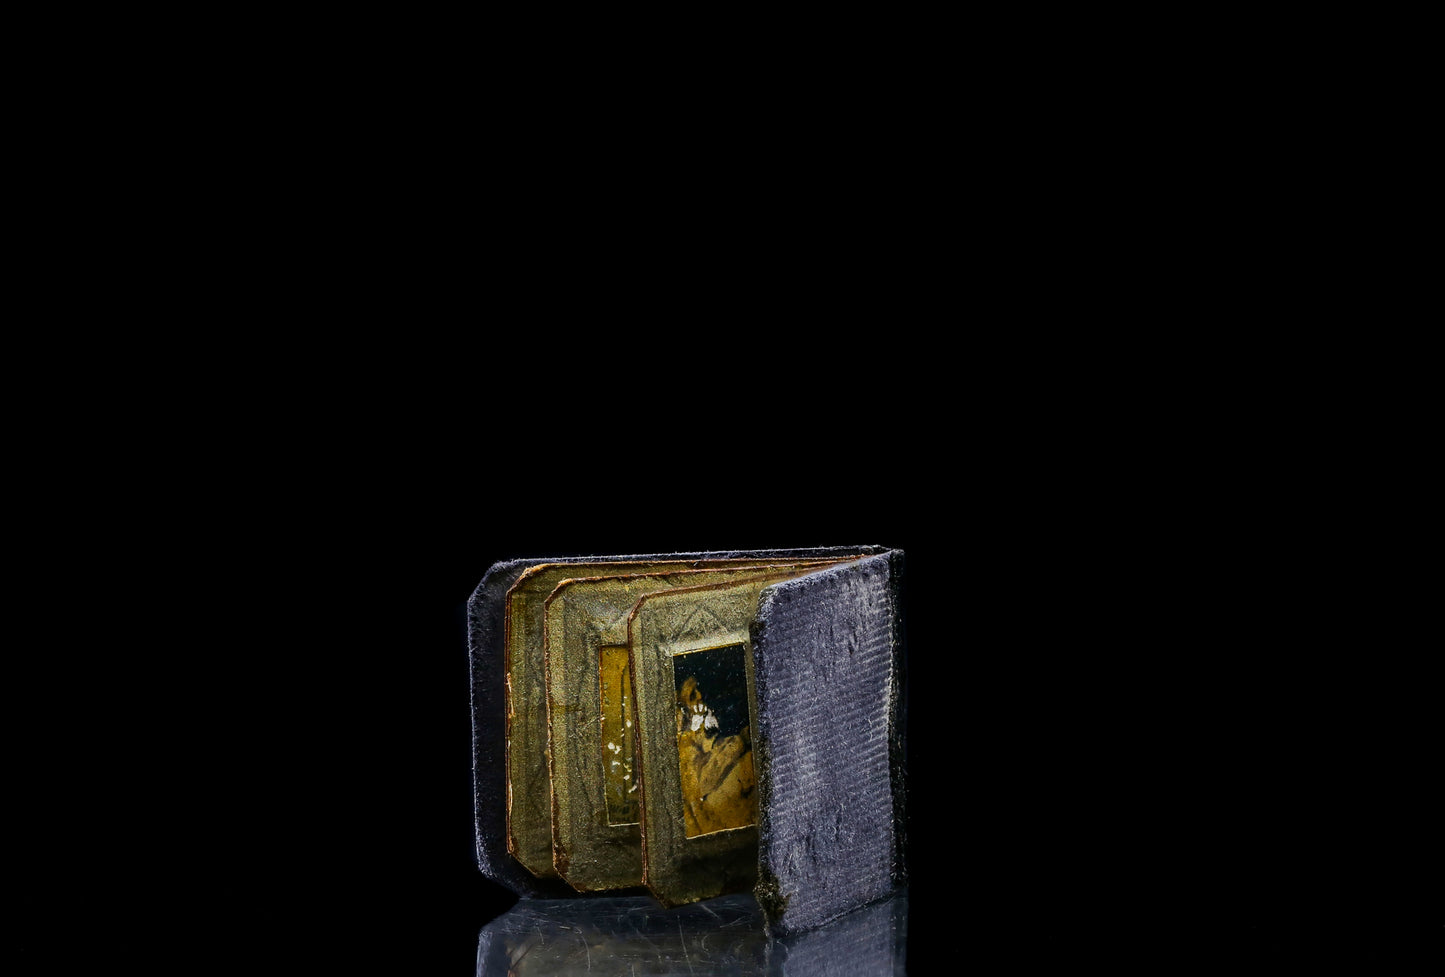 Tobacco & Regrets "Momento Mori" Miniature Photo Album